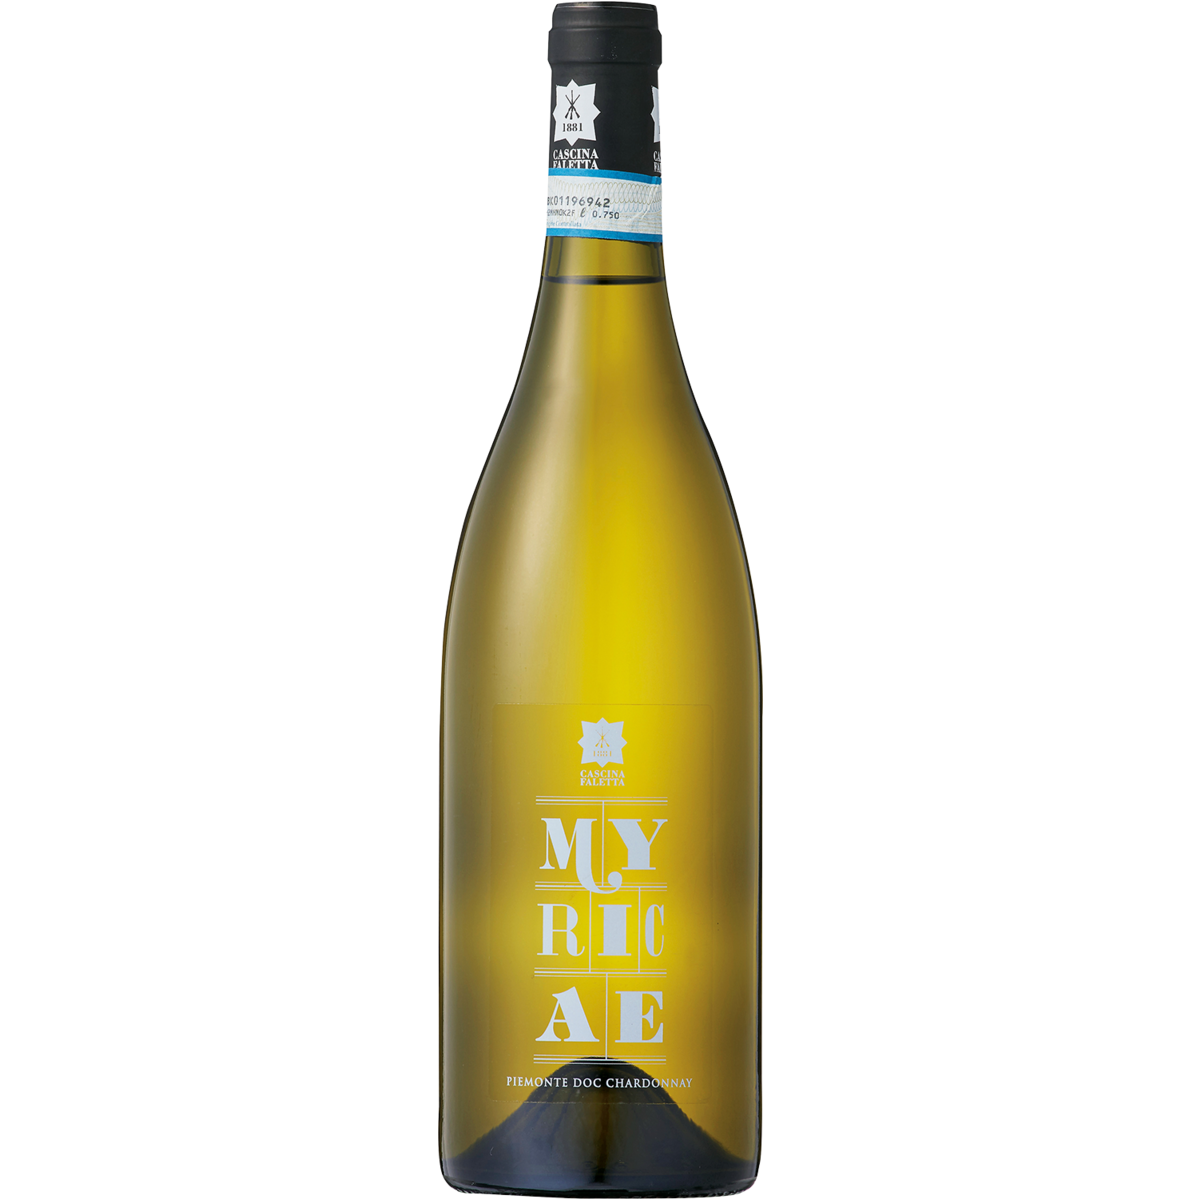 MYRICAE Piemonte Chardonnay